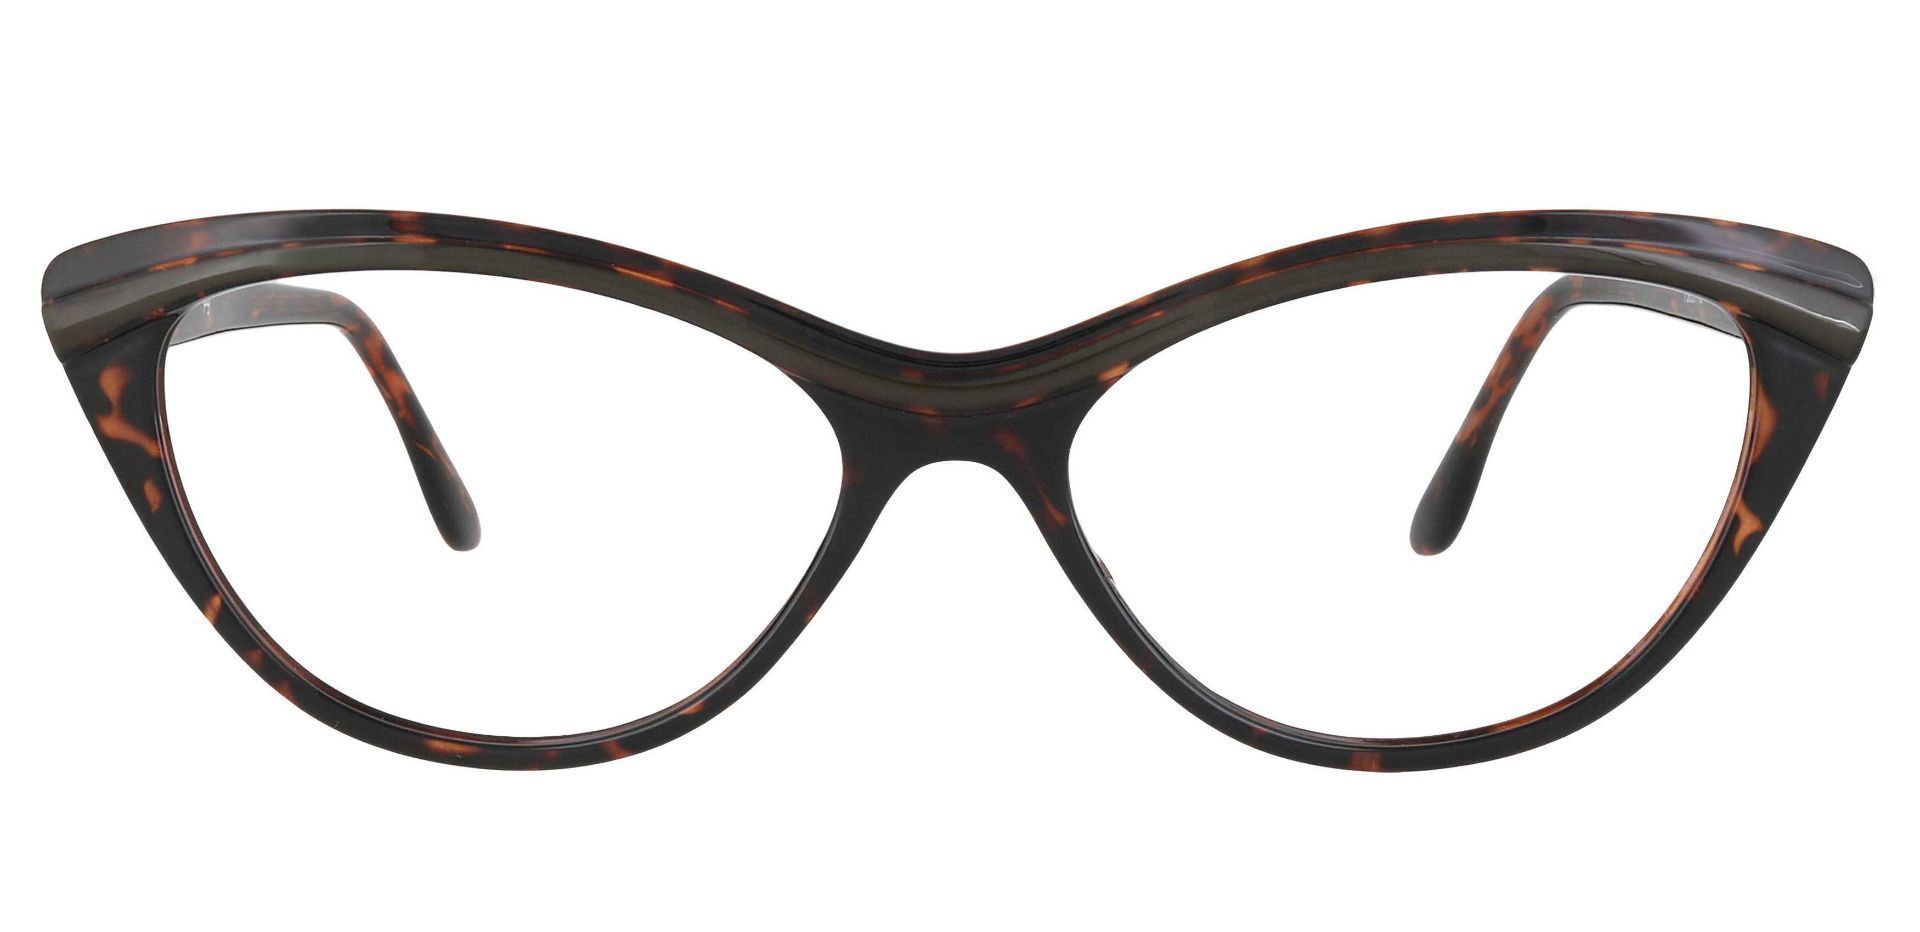 Twilight Cat Eye Prescription Glasses - Tortoise